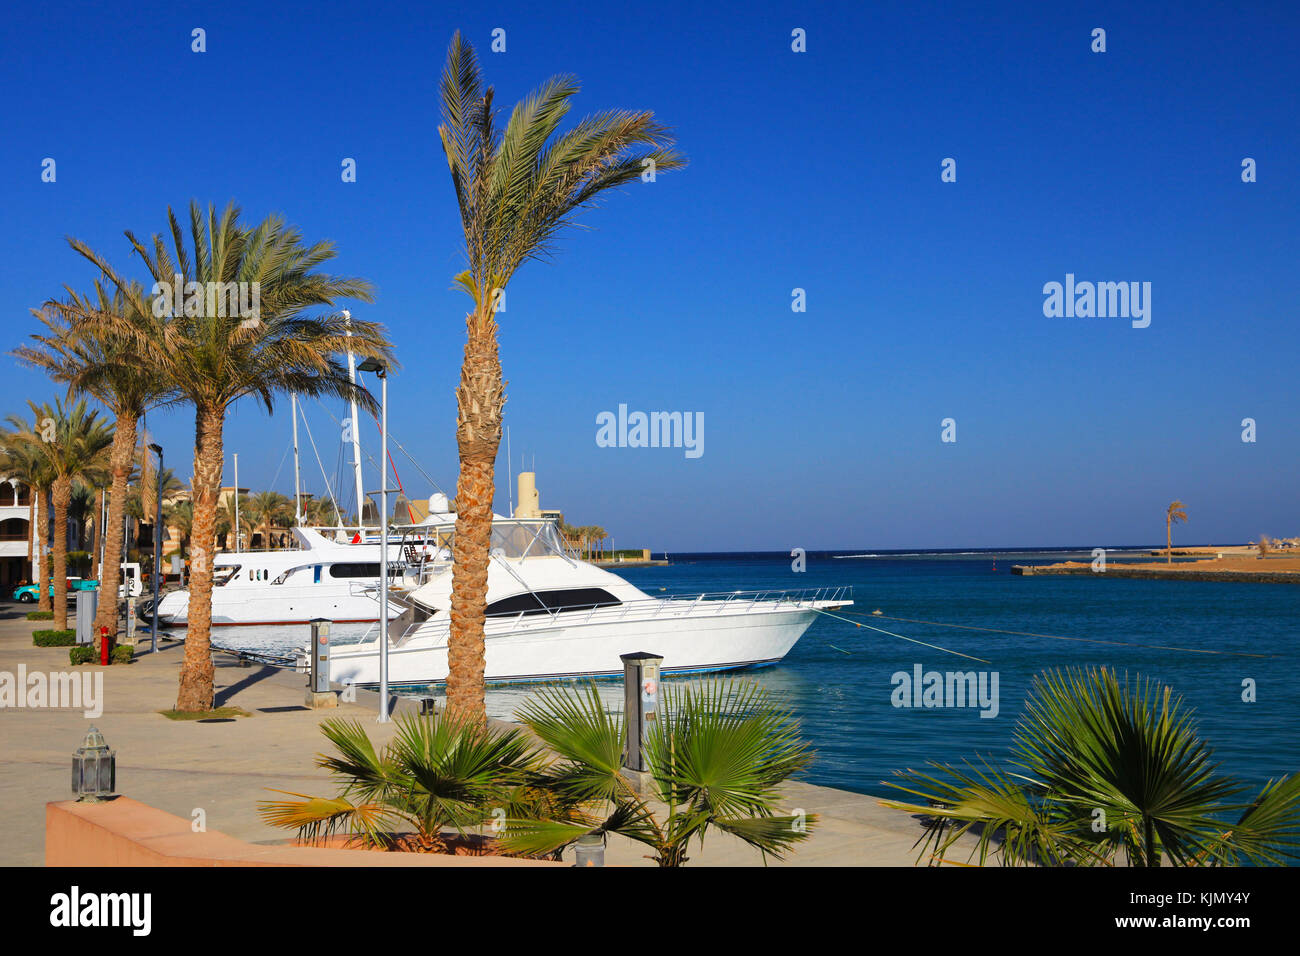 Port Ghalib, einen schönen Hafen, Yachthafen und touristischen Stadt in der Nähe von Marsa Alam, Ägypten. Stockfoto